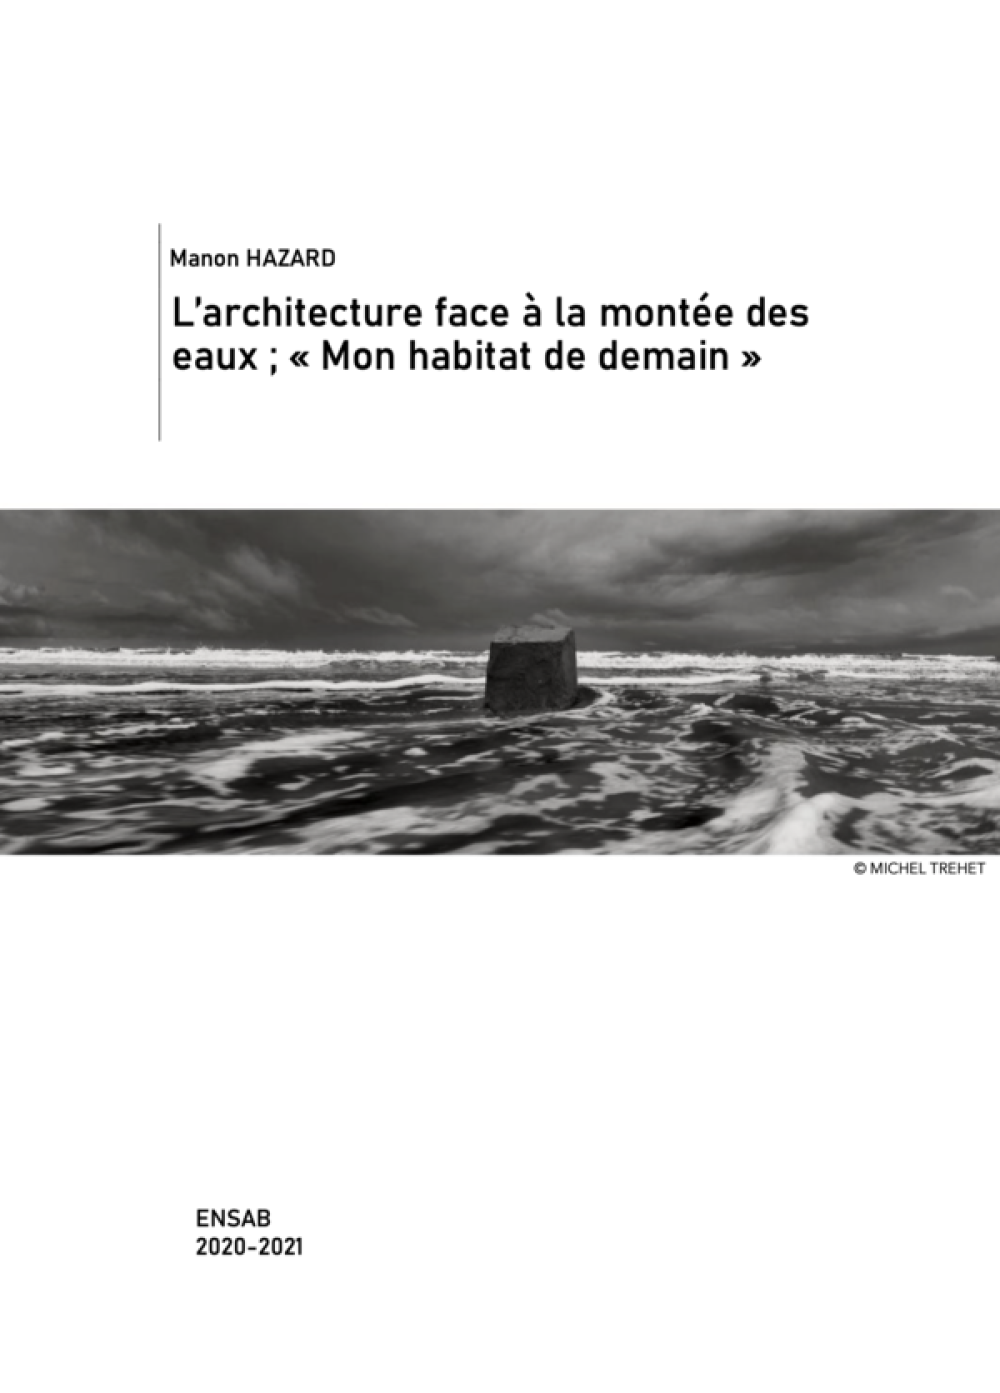 [Publication] L'architecture face à la montée des eaux : Mon habitat de demain